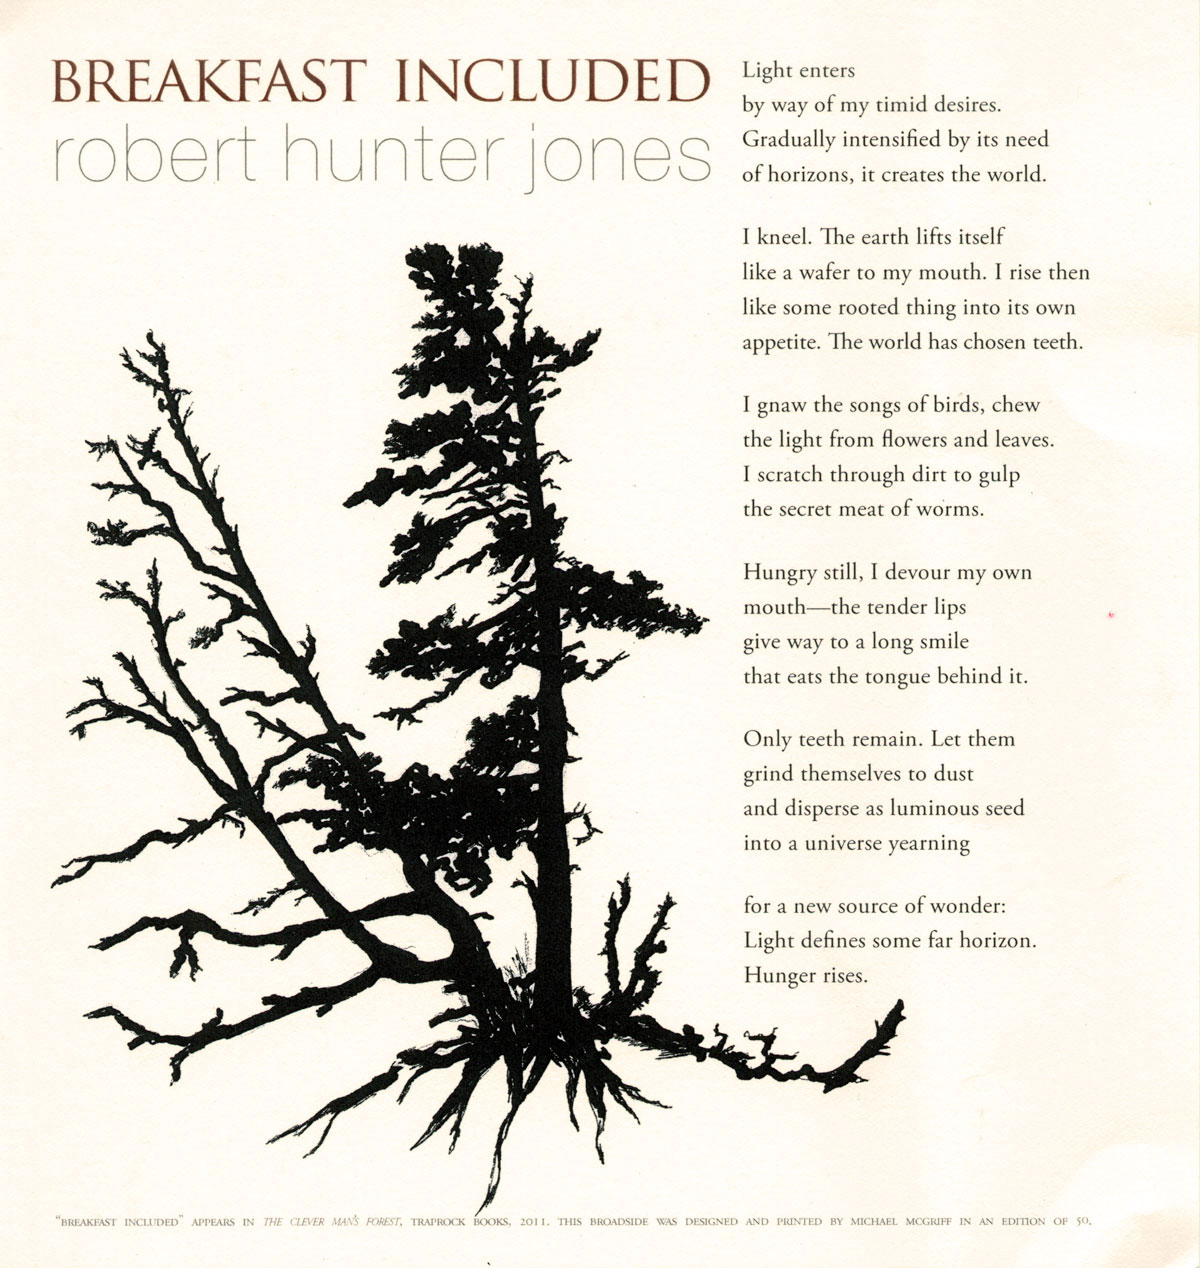 Breakfast Included, a broadside of a poem by Robert Hunter Jones, aka Gray Jones